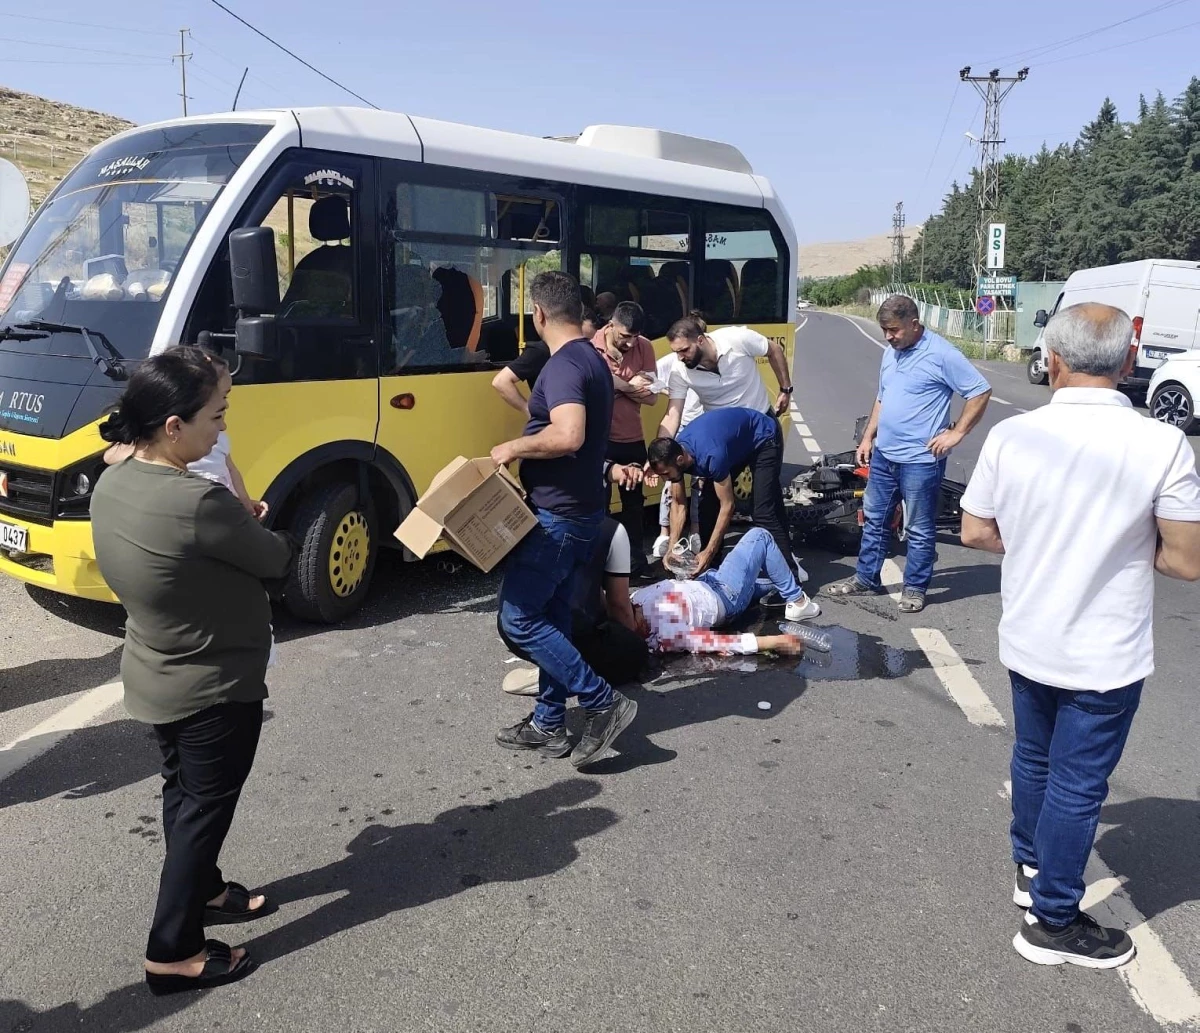 Mardin’in Nusaybin ilçesinde minibüs ile motosiklet çarpışması sonucu 3 kişi yaralandı